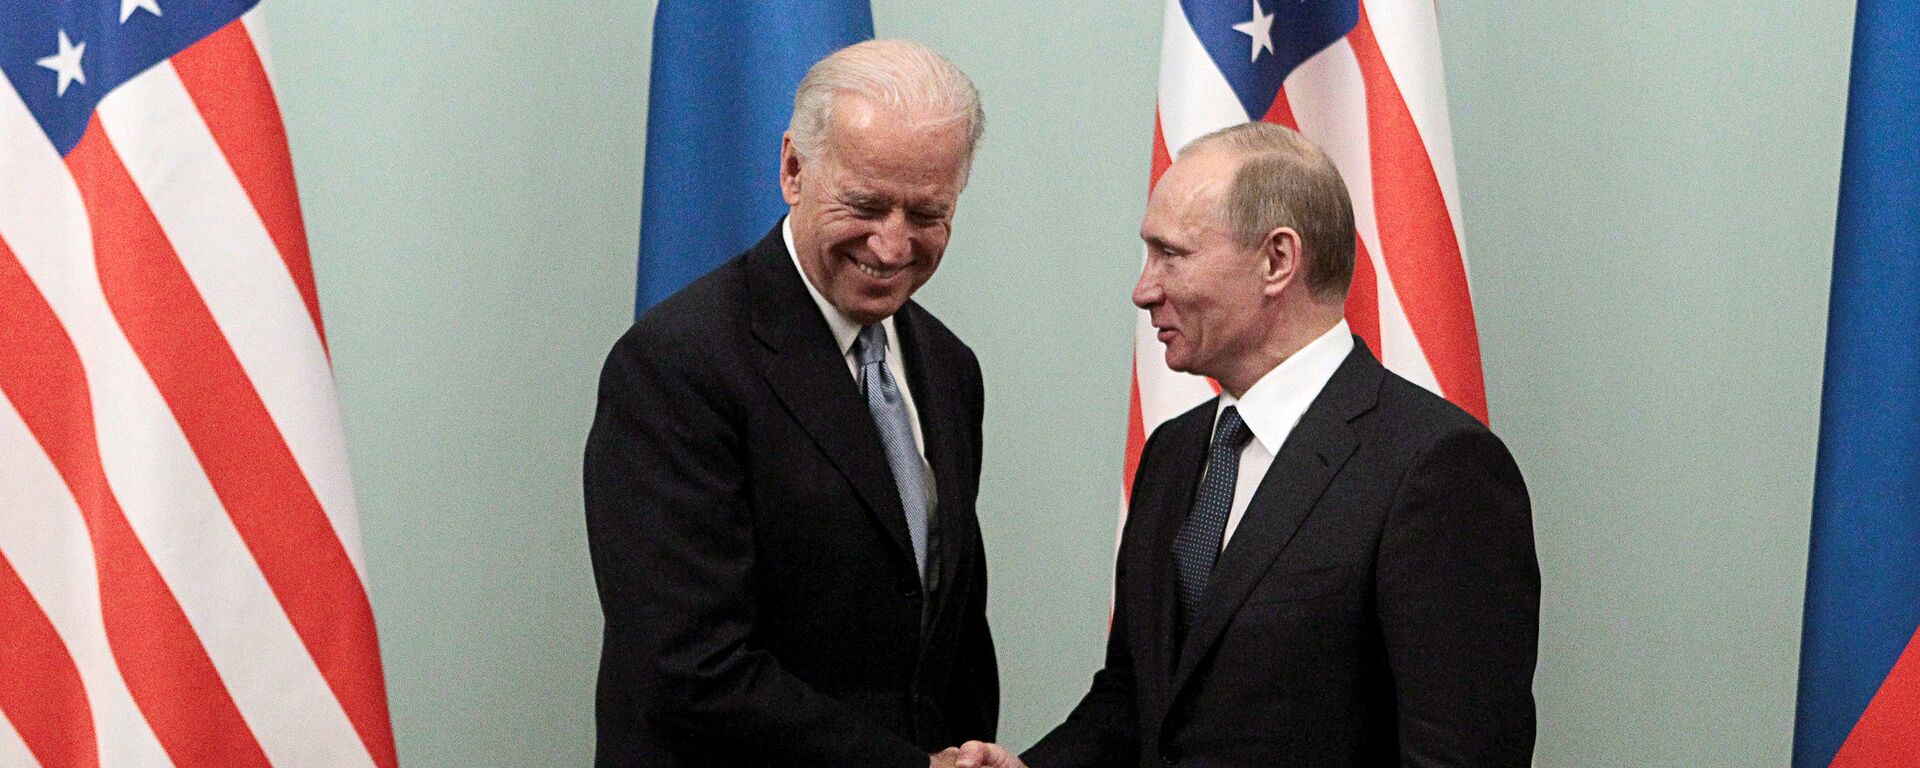 Rusya Devlet Başkanı Vladimir Putin ve ABD Başkanı Joe Biden - Sputnik Türkiye, 1920, 10.06.2021